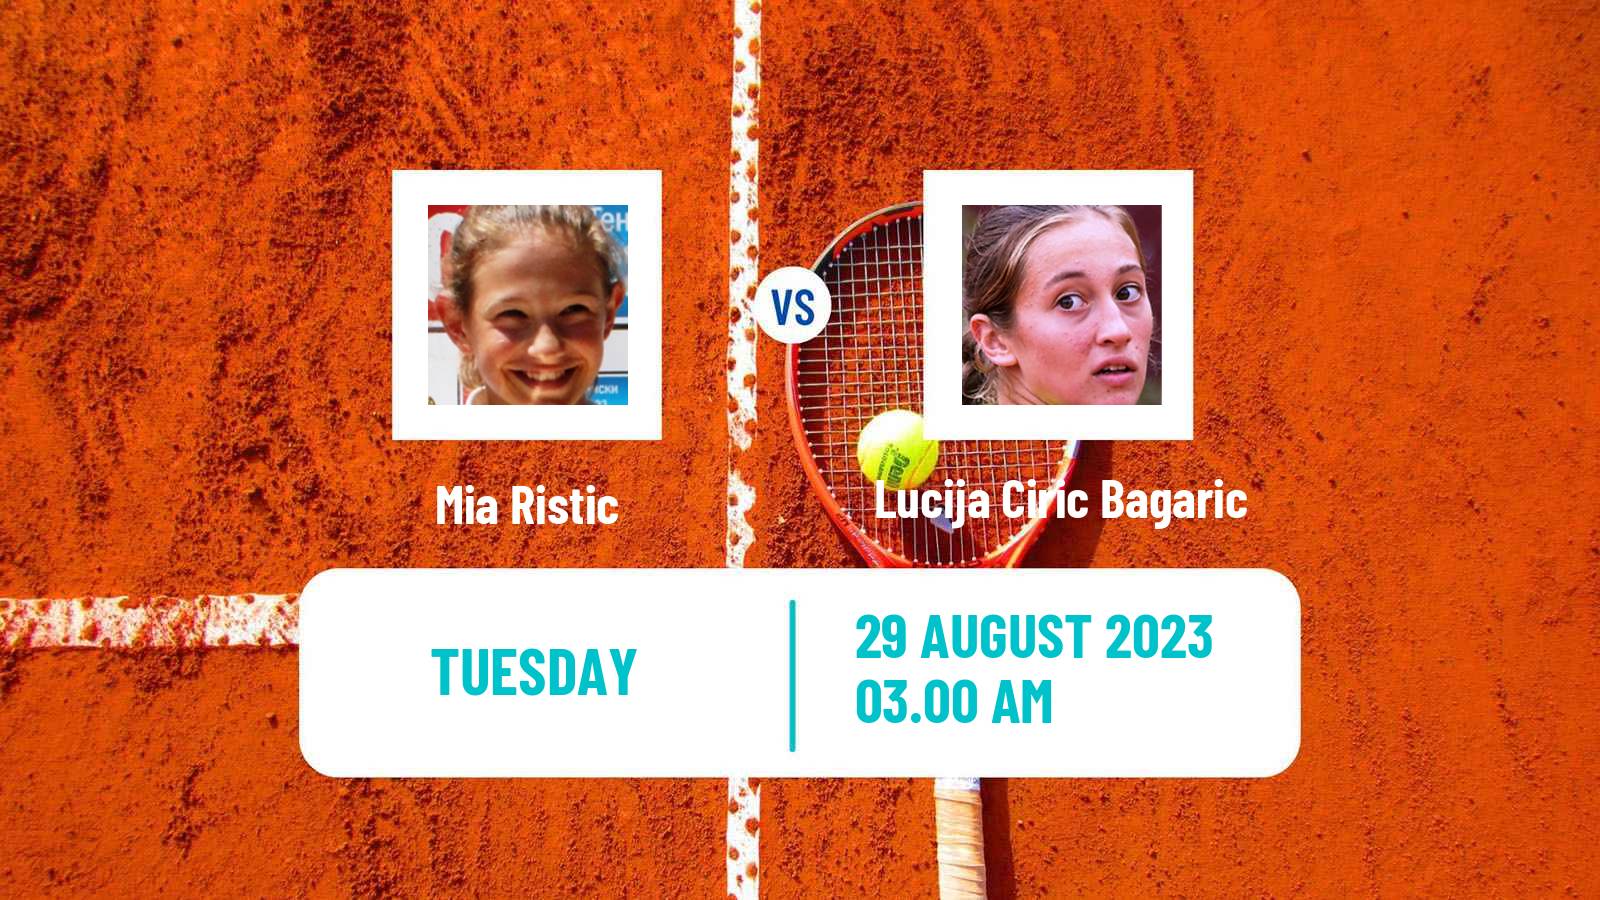 Tennis ITF W25 Trieste Women Mia Ristic - Lucija Ciric Bagaric